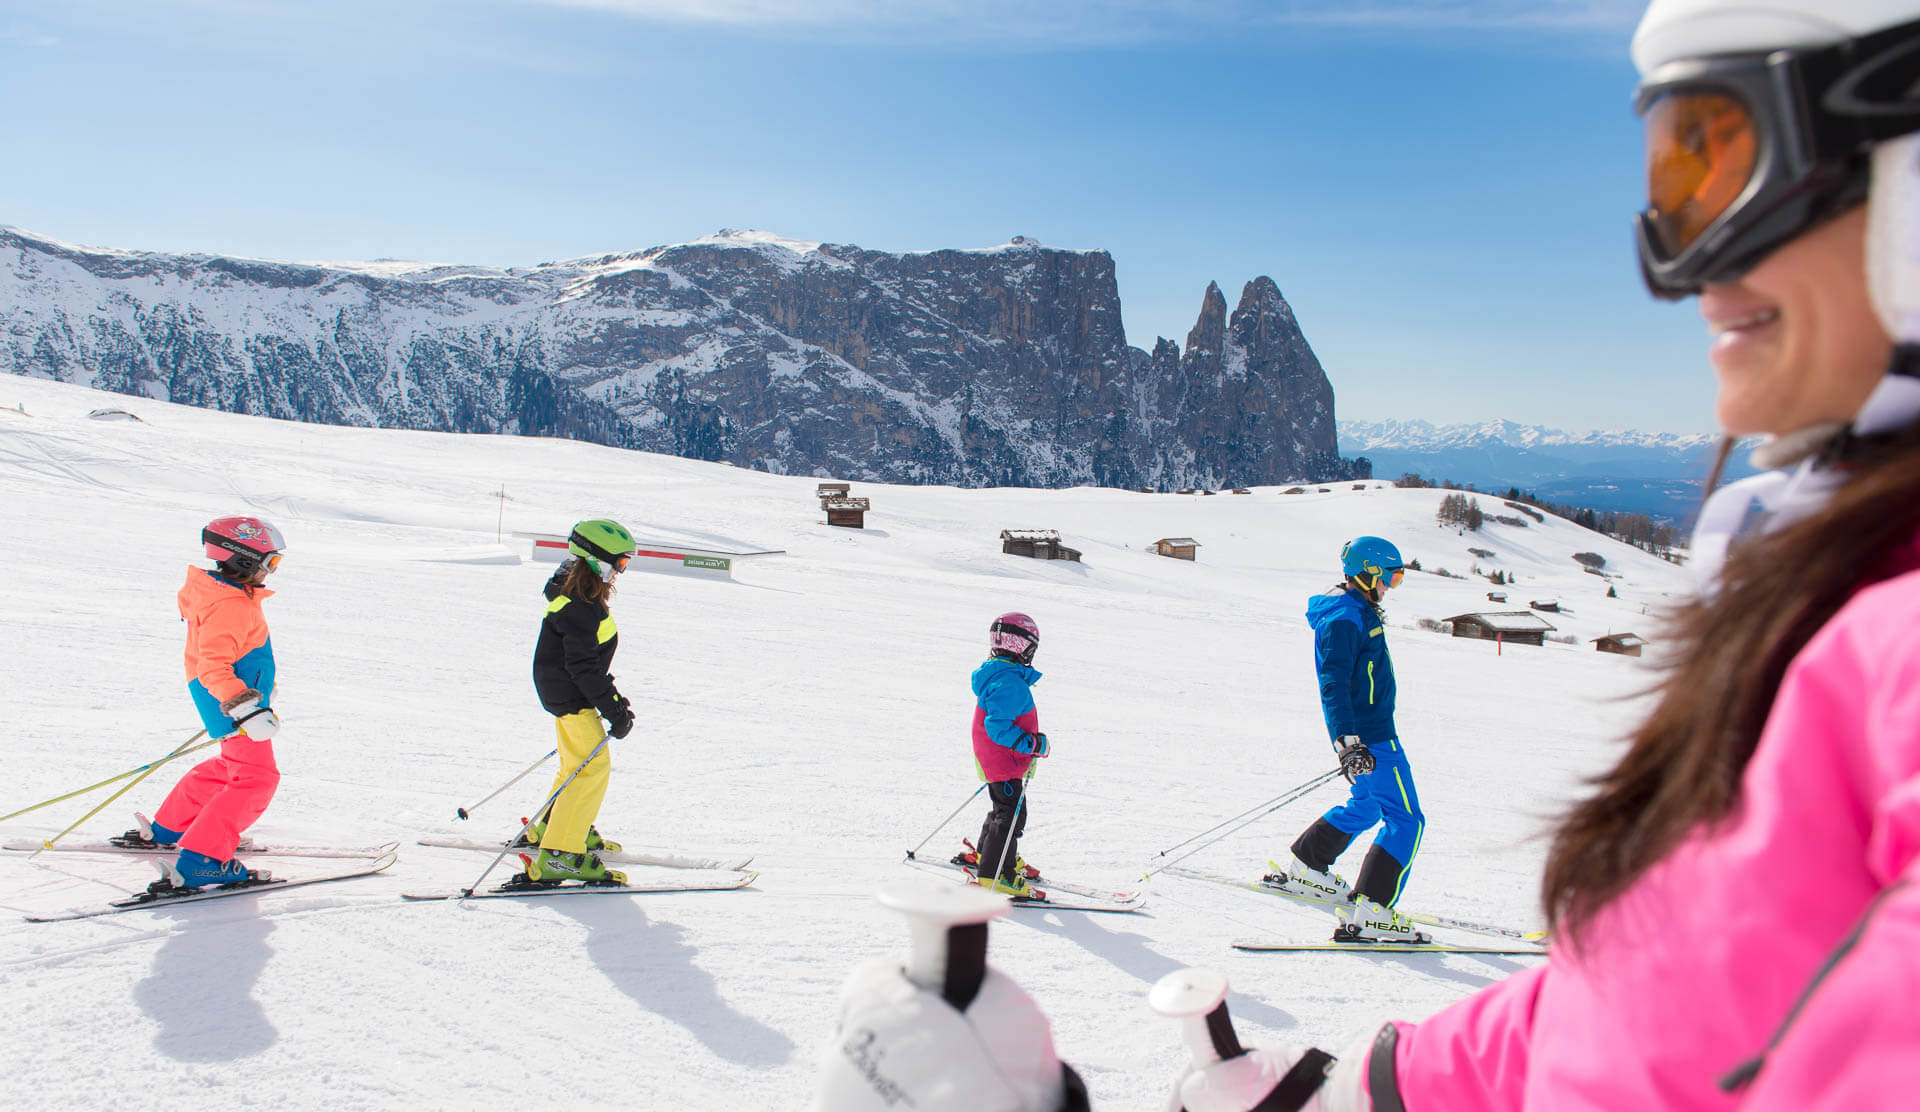 Familienskifahren auf der Seiser Alm, dem Familienskigebiet Südtirols